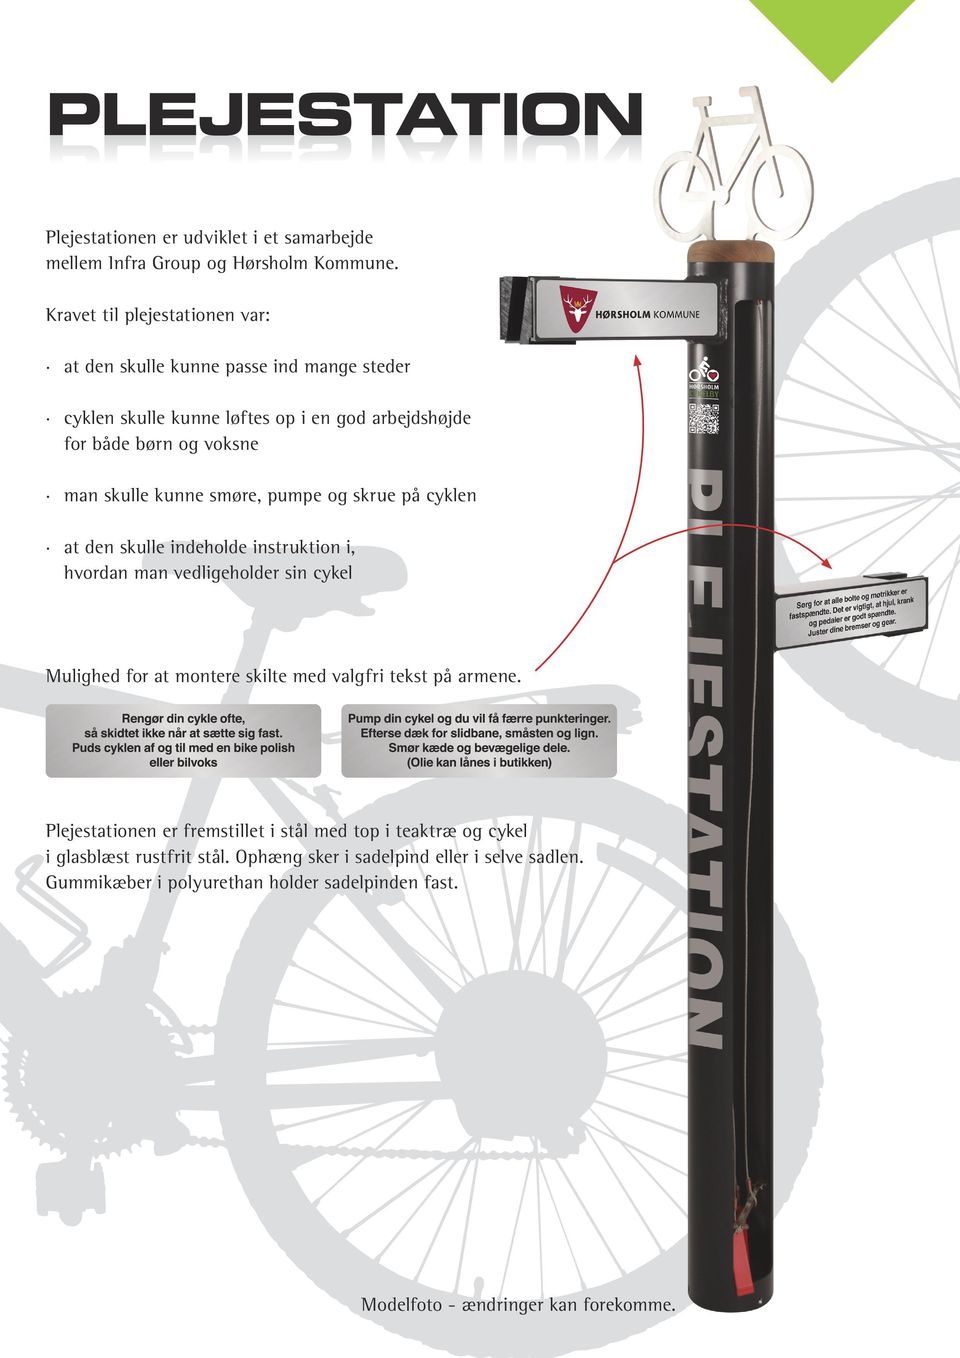 kunne smøre, pumpe og skrue på cyklen at den skulle indeholde instruktion i, hvordan man vedligeholder sin cykel Mulighed for at montere skilte med valgfri tekst